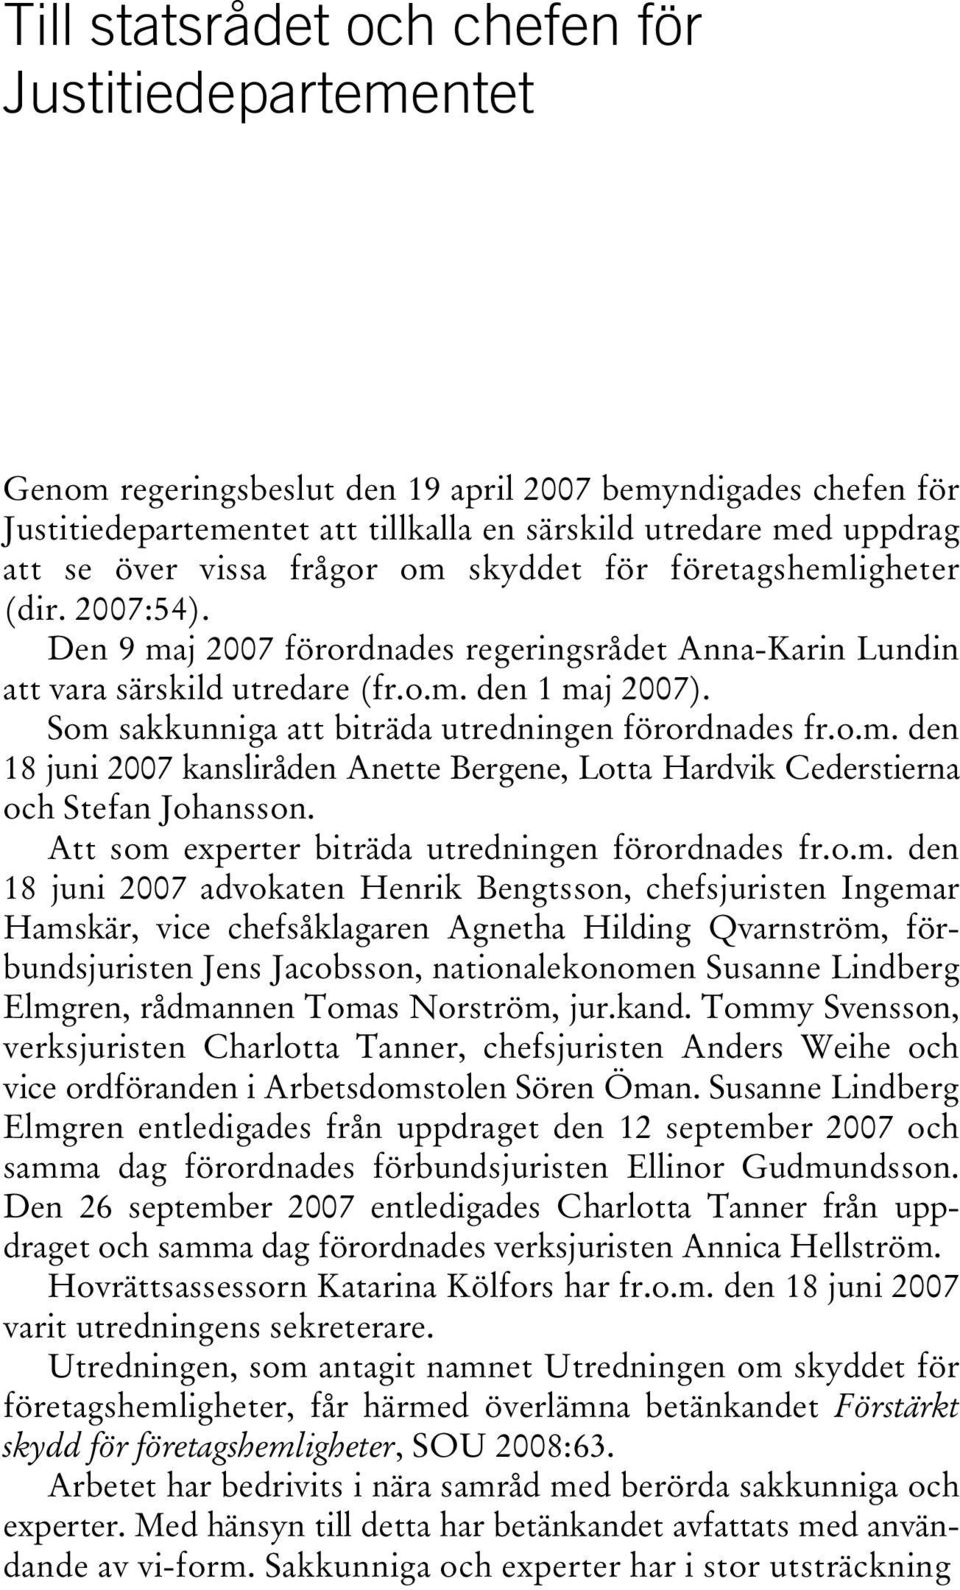 Som sakkunniga att biträda utredningen förordnades fr.o.m. den 18 juni 2007 kansliråden Anette Bergene, Lotta Hardvik Cederstierna och Stefan Johansson.